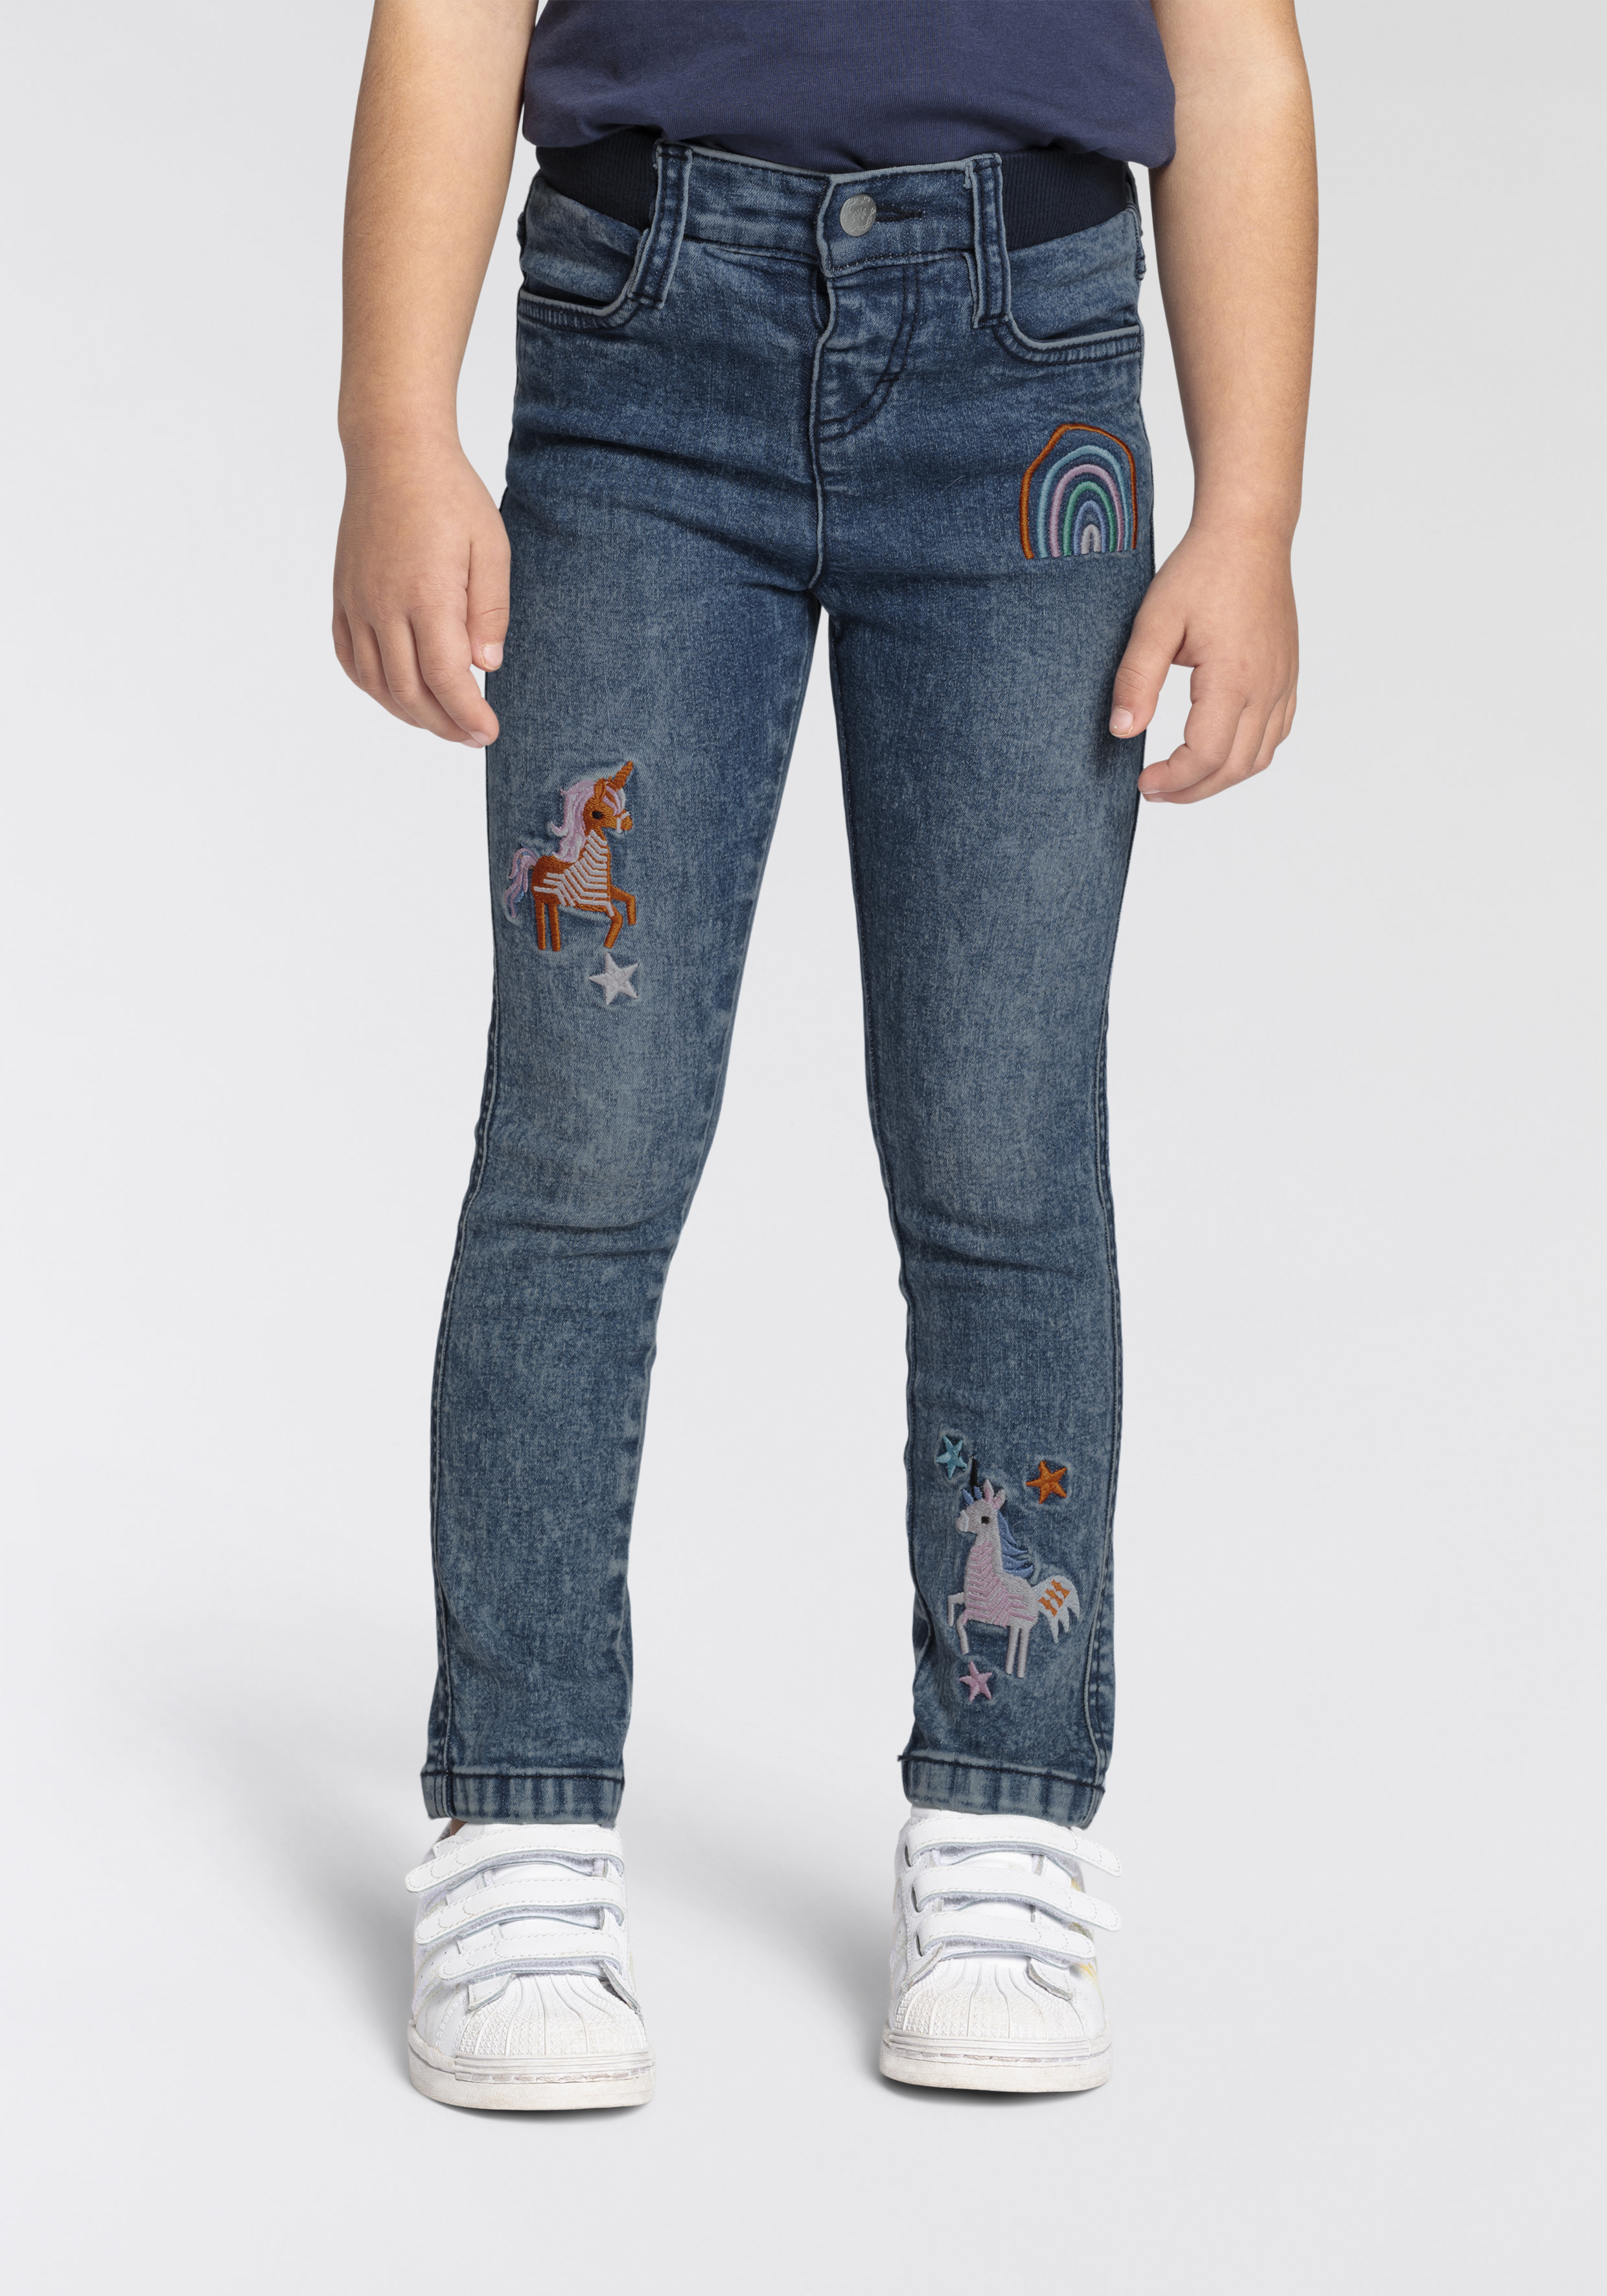 teddys jeans online kaufen | Jelmoli-Versand | Stretchjeans